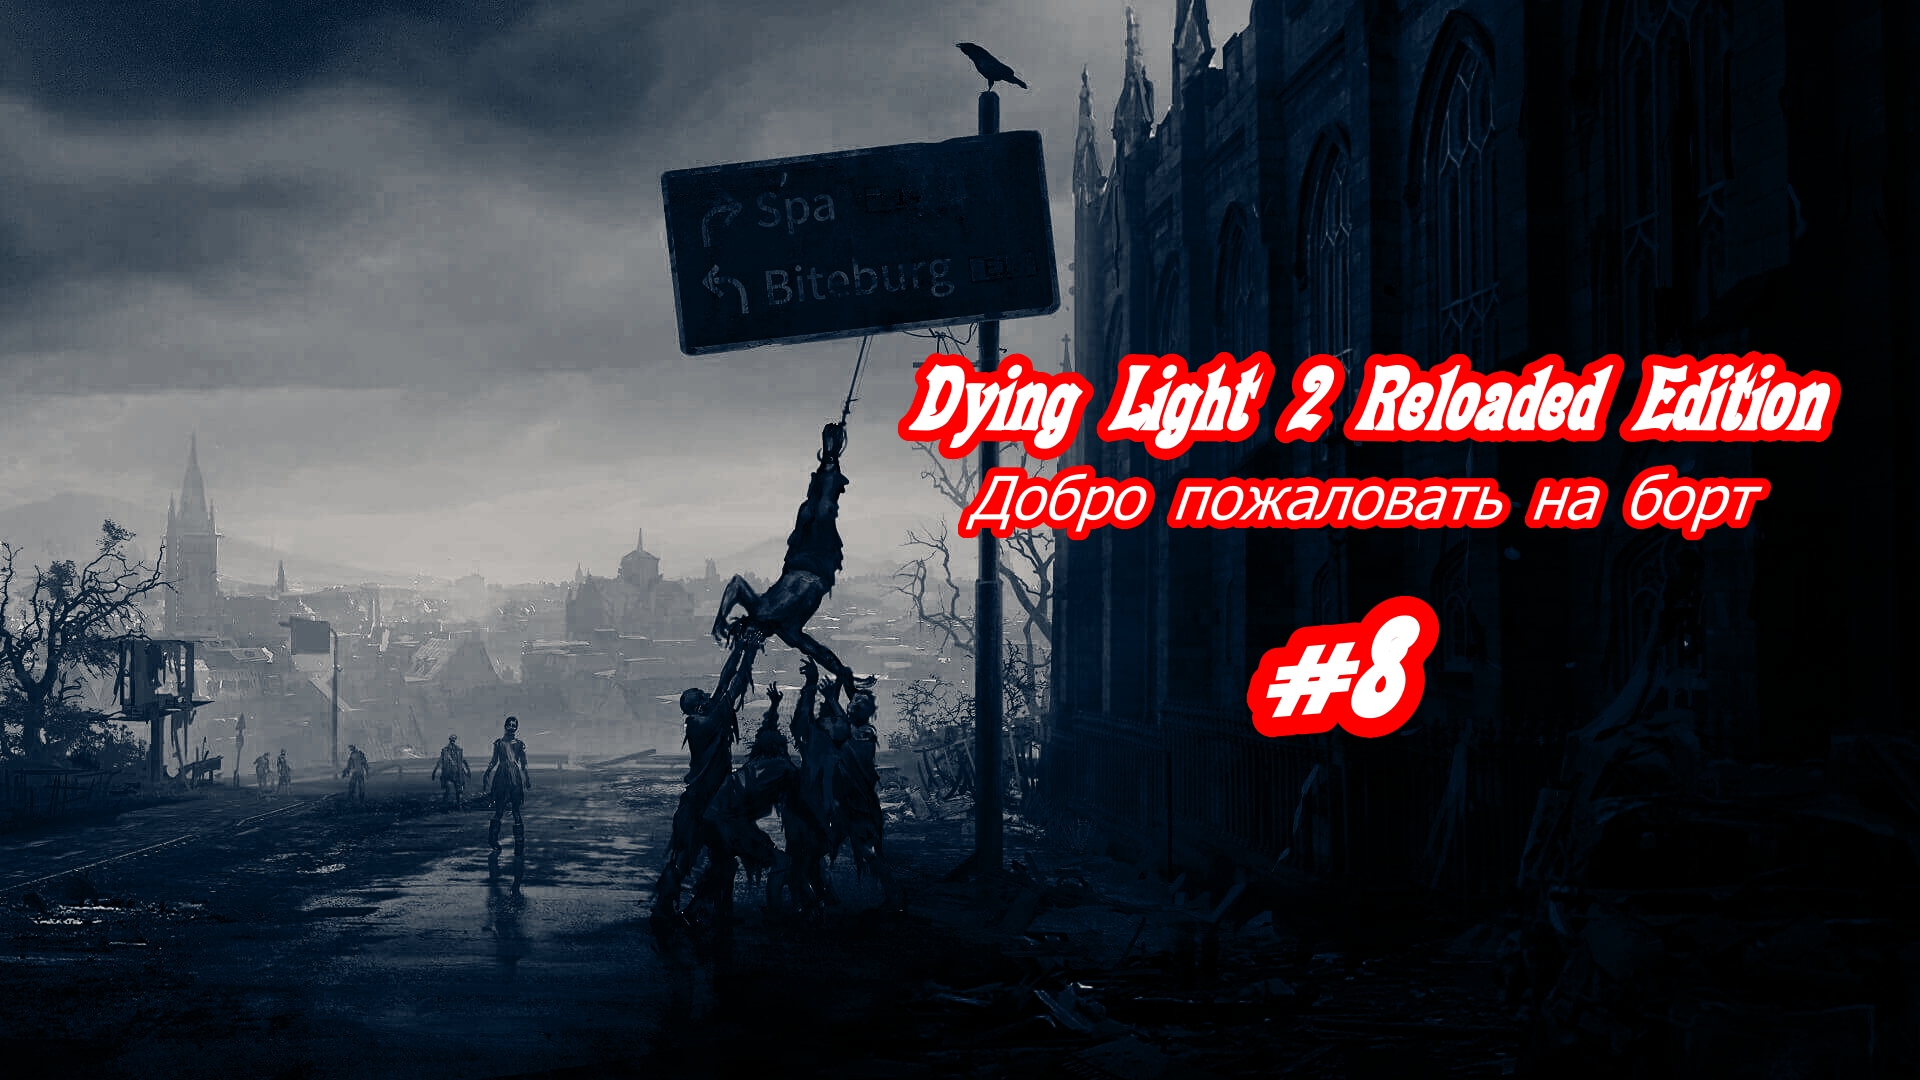 Dying Light 2 Reloaded Edition Добро пожаловать на борт Без комментарий Прохождение #8